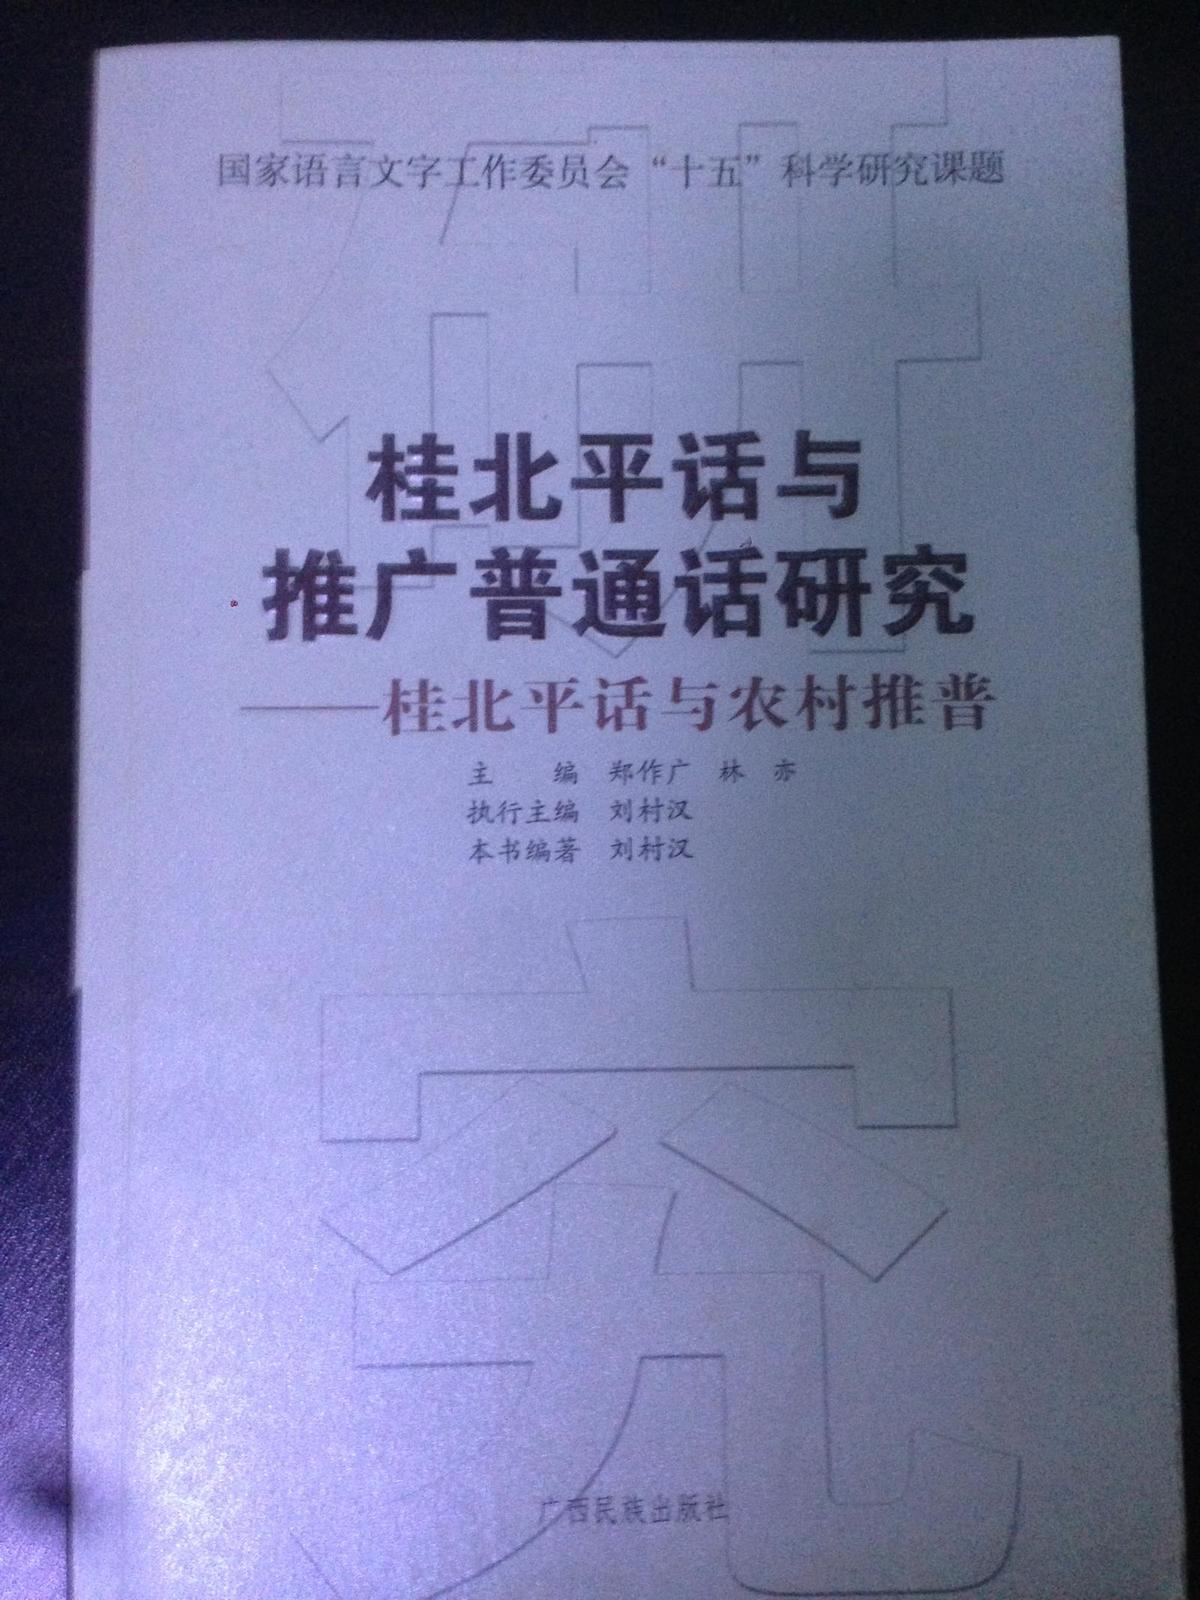 桂北平话与推广普通话研究--桂北平话与农村推普